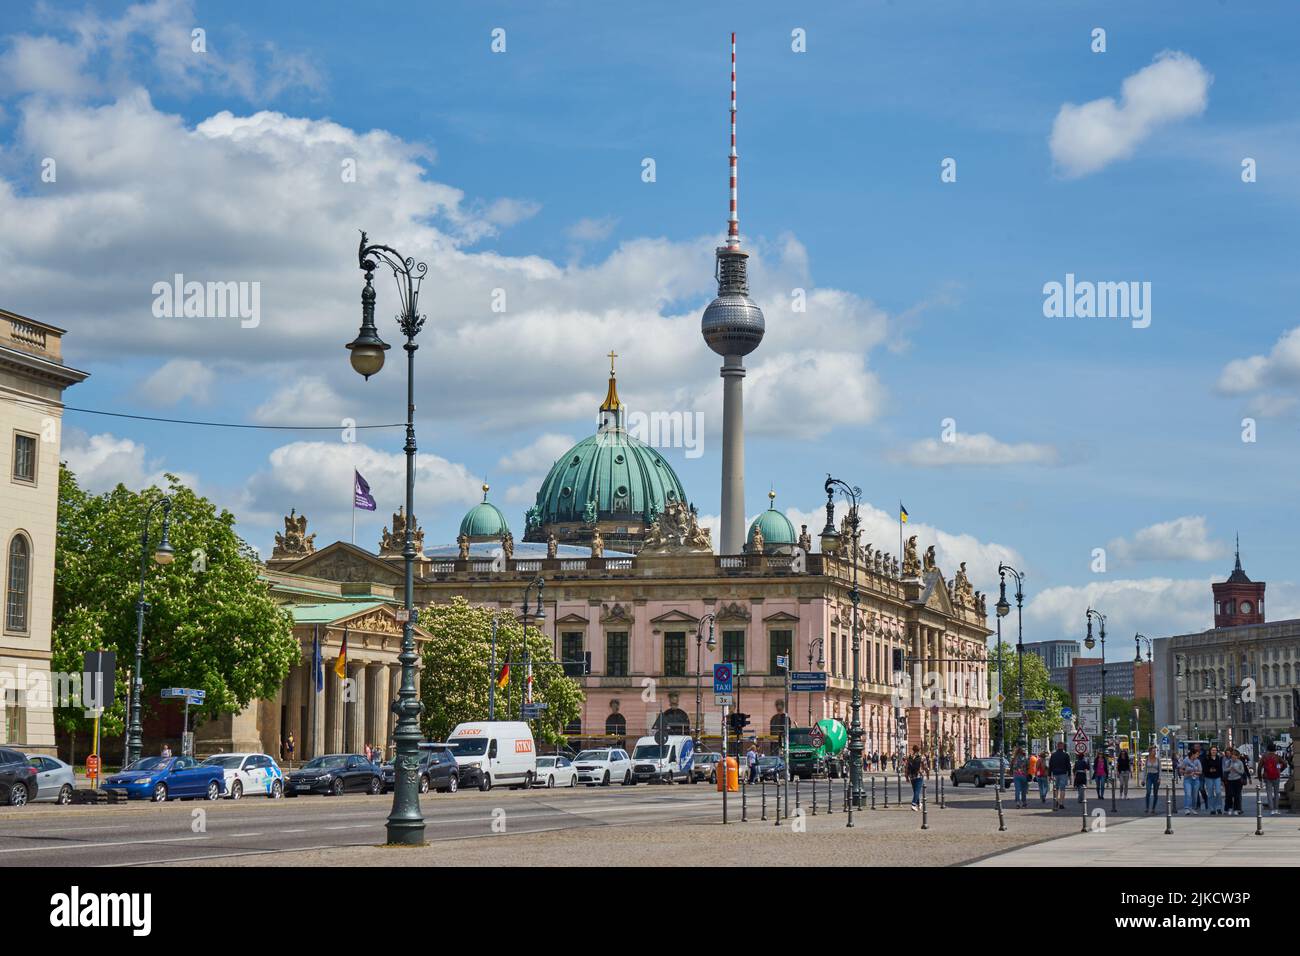 Unter den Linden, links die Neue Wache und das Deutsche Historische Museum, dahinter der Berliner Dom und der Berliner Fernsehturm, Berlin Stock Photo